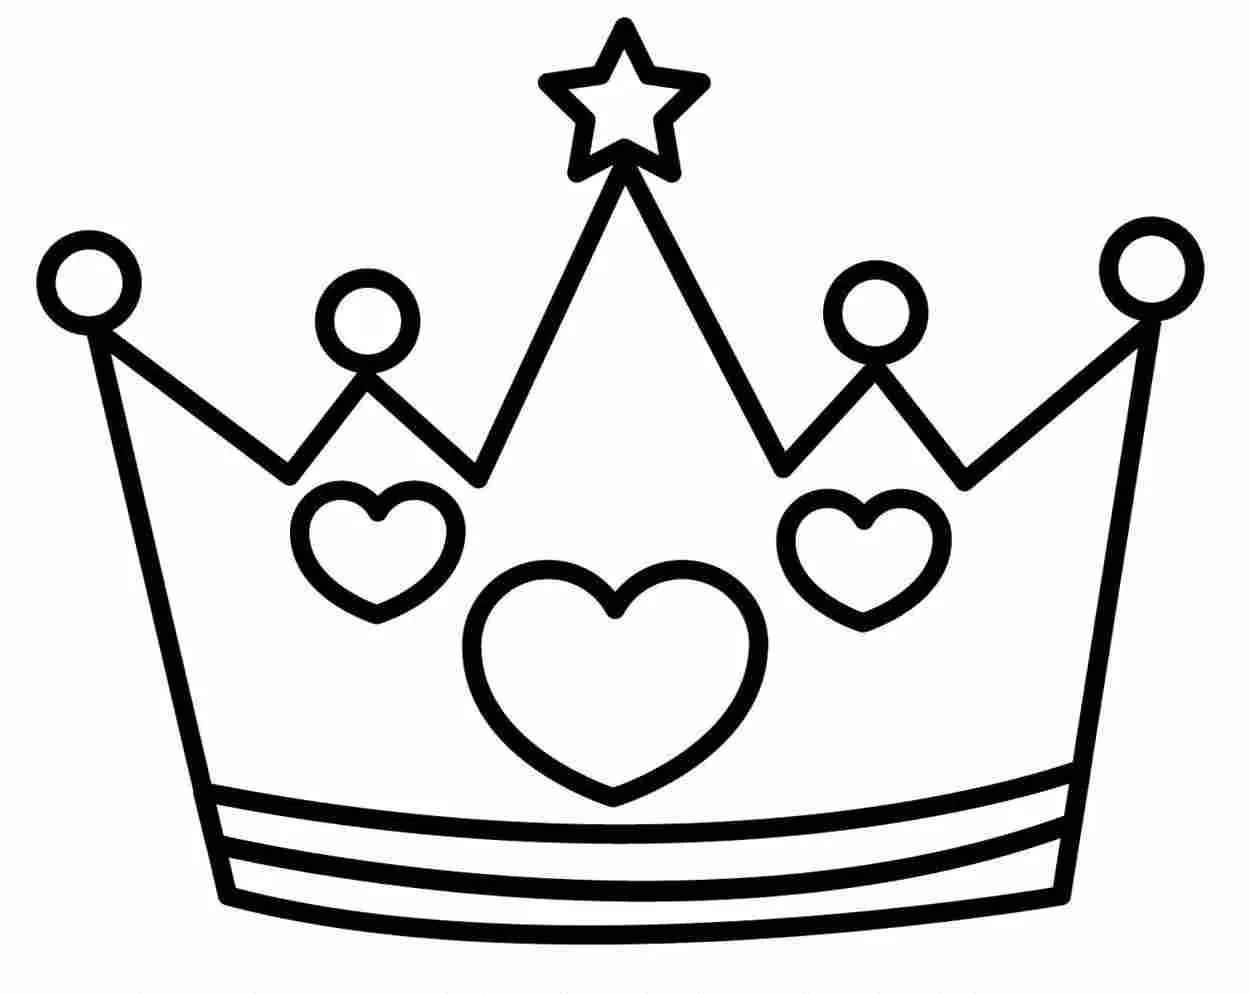 Coronas de rey en dibujos - Imagui